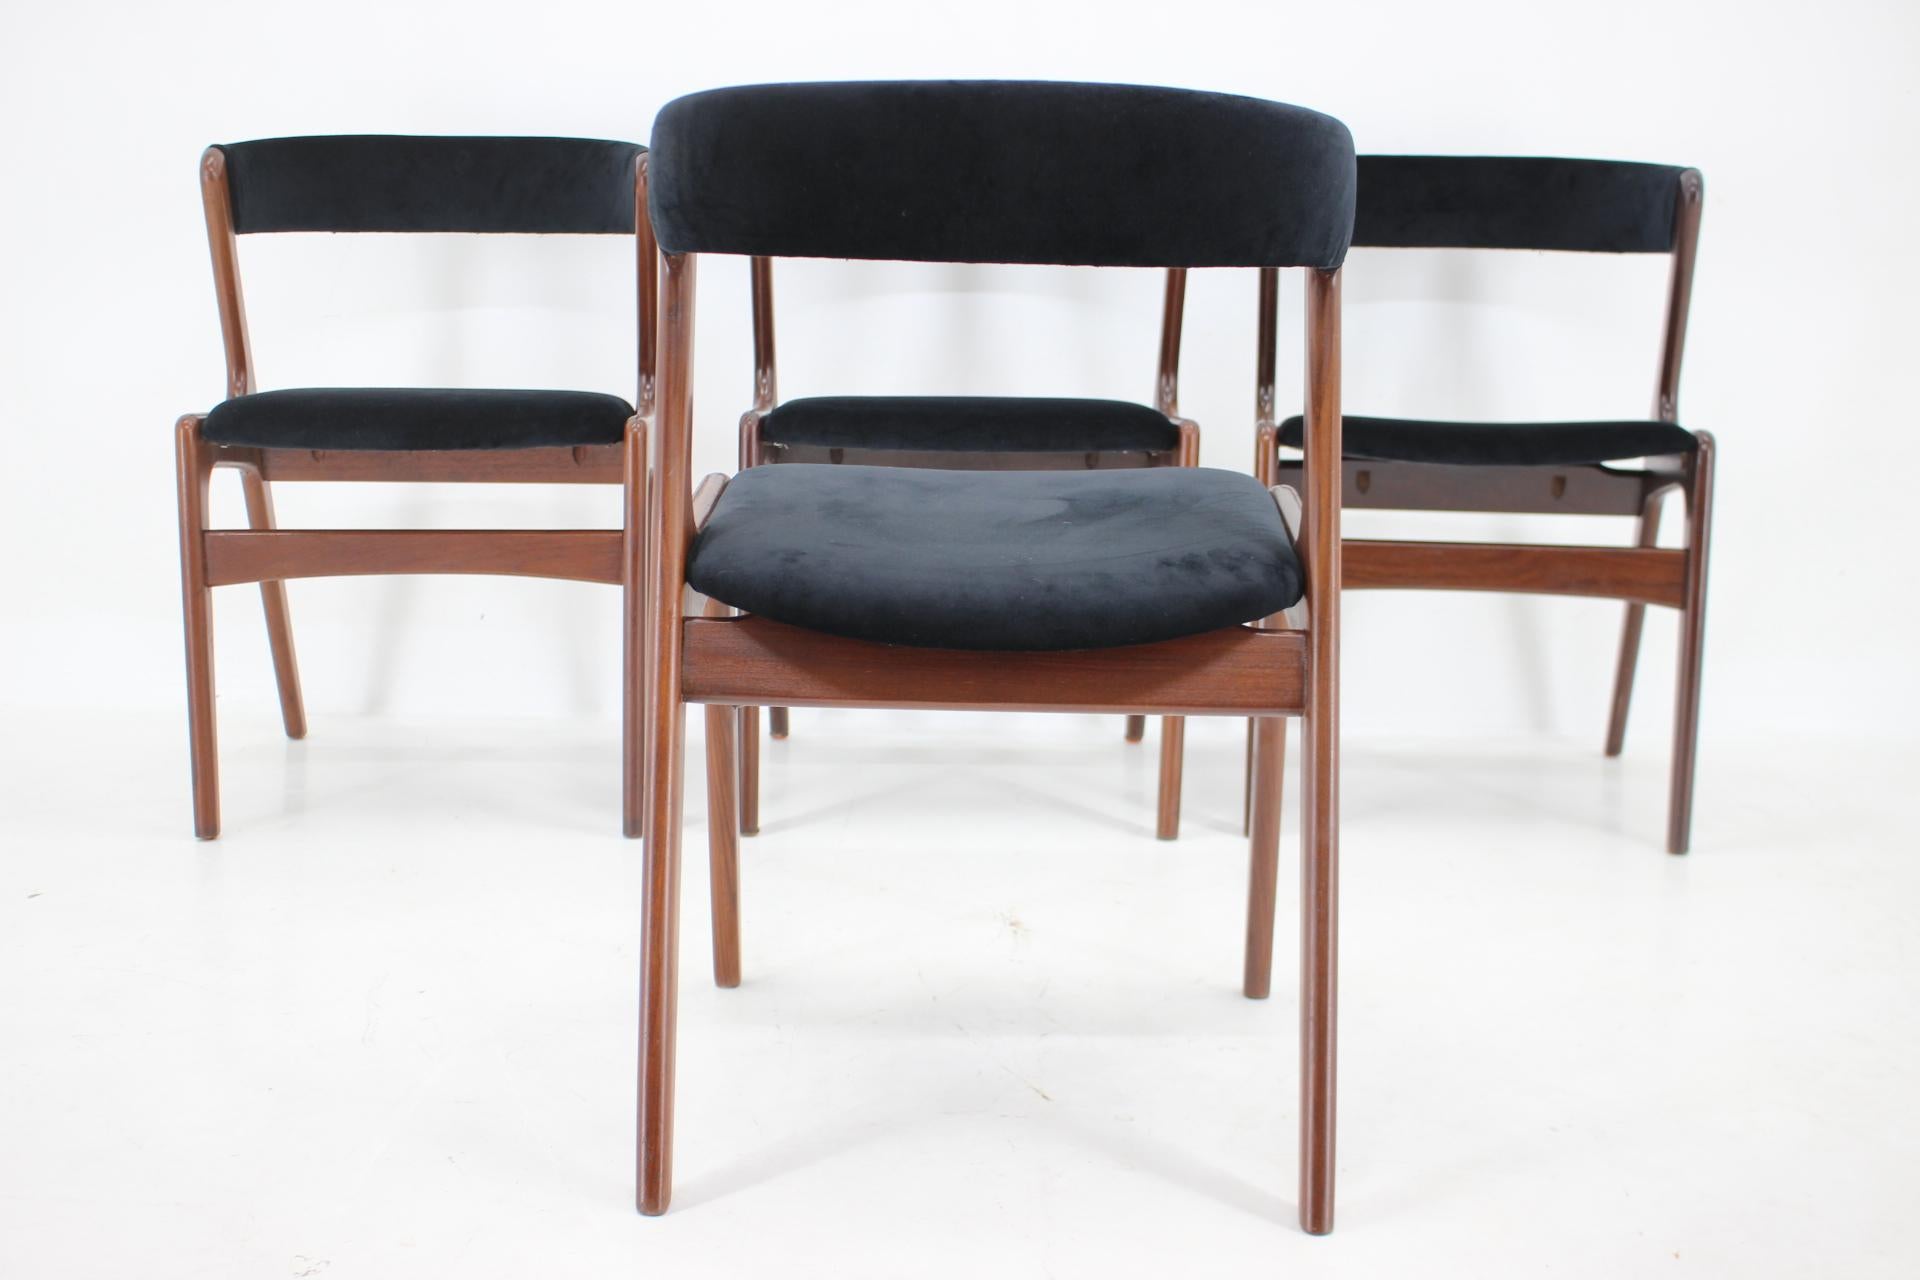 1960s Danish Teak Dining Chairs in Black Velvet  For Sale 3